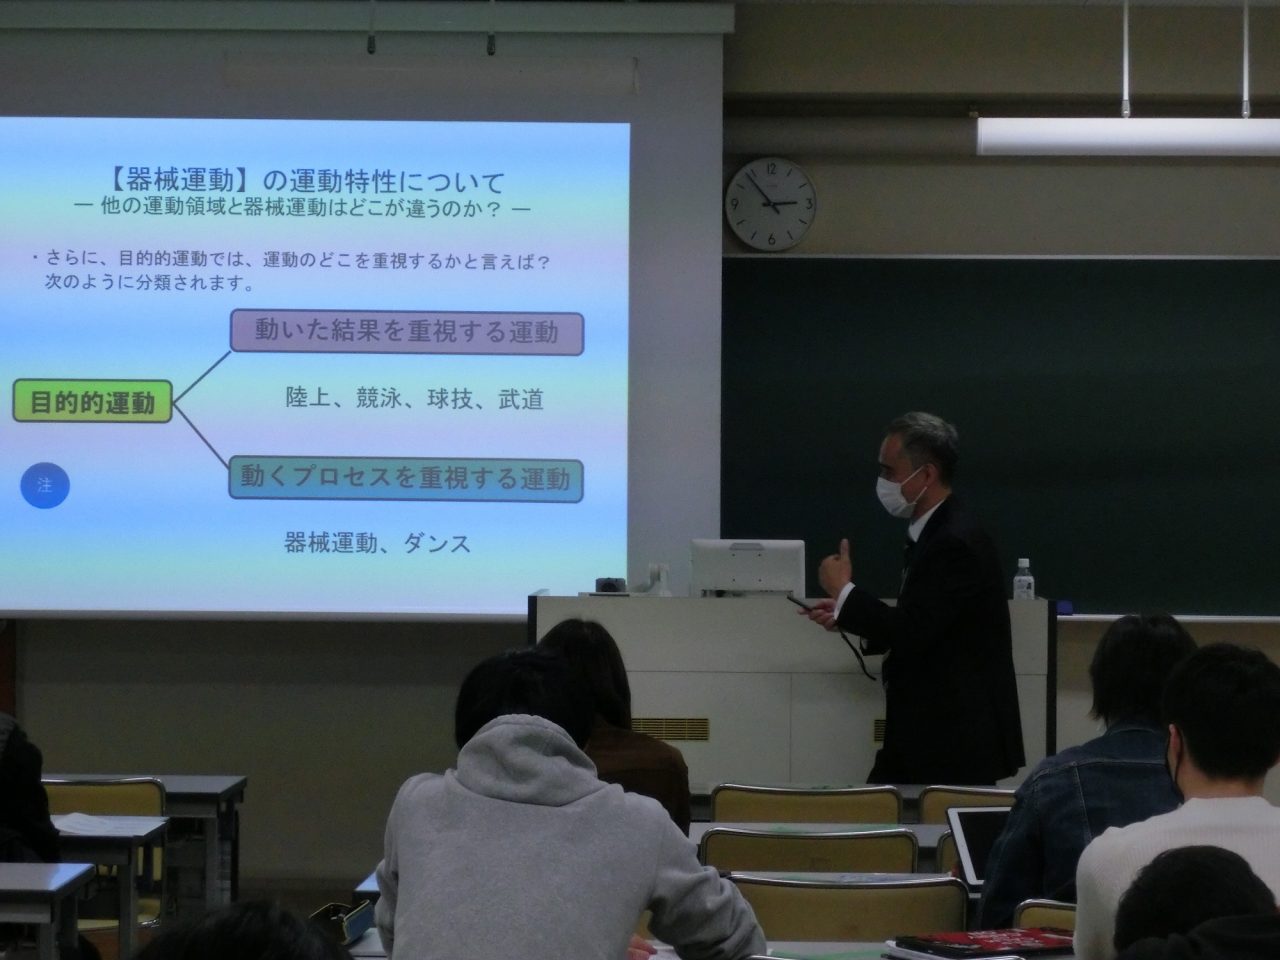 講義をしている岡端隆教授